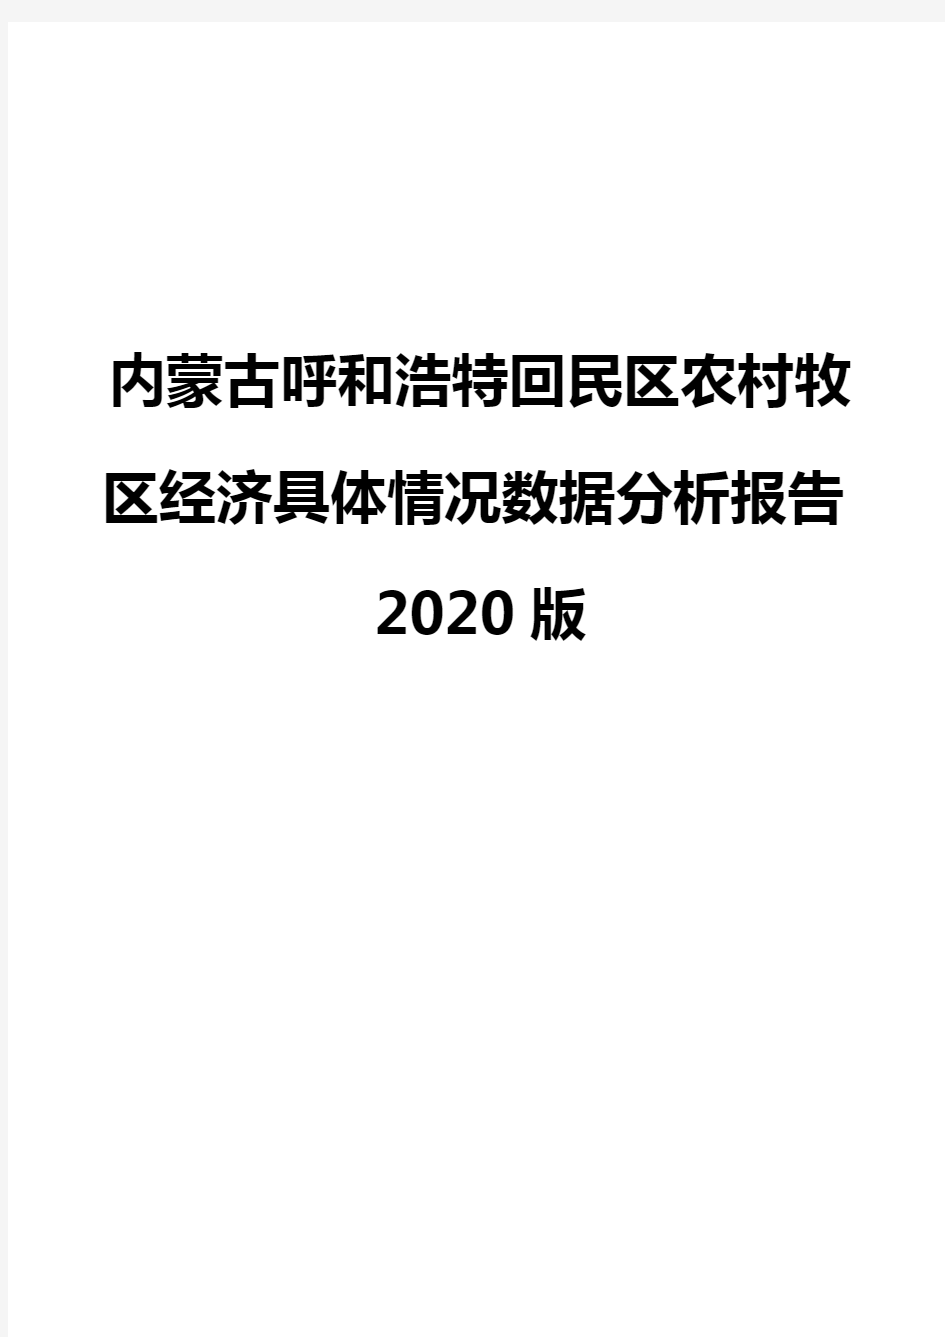 内蒙古呼和浩特回民区农村牧区经济具体情况数据分析报告2020版